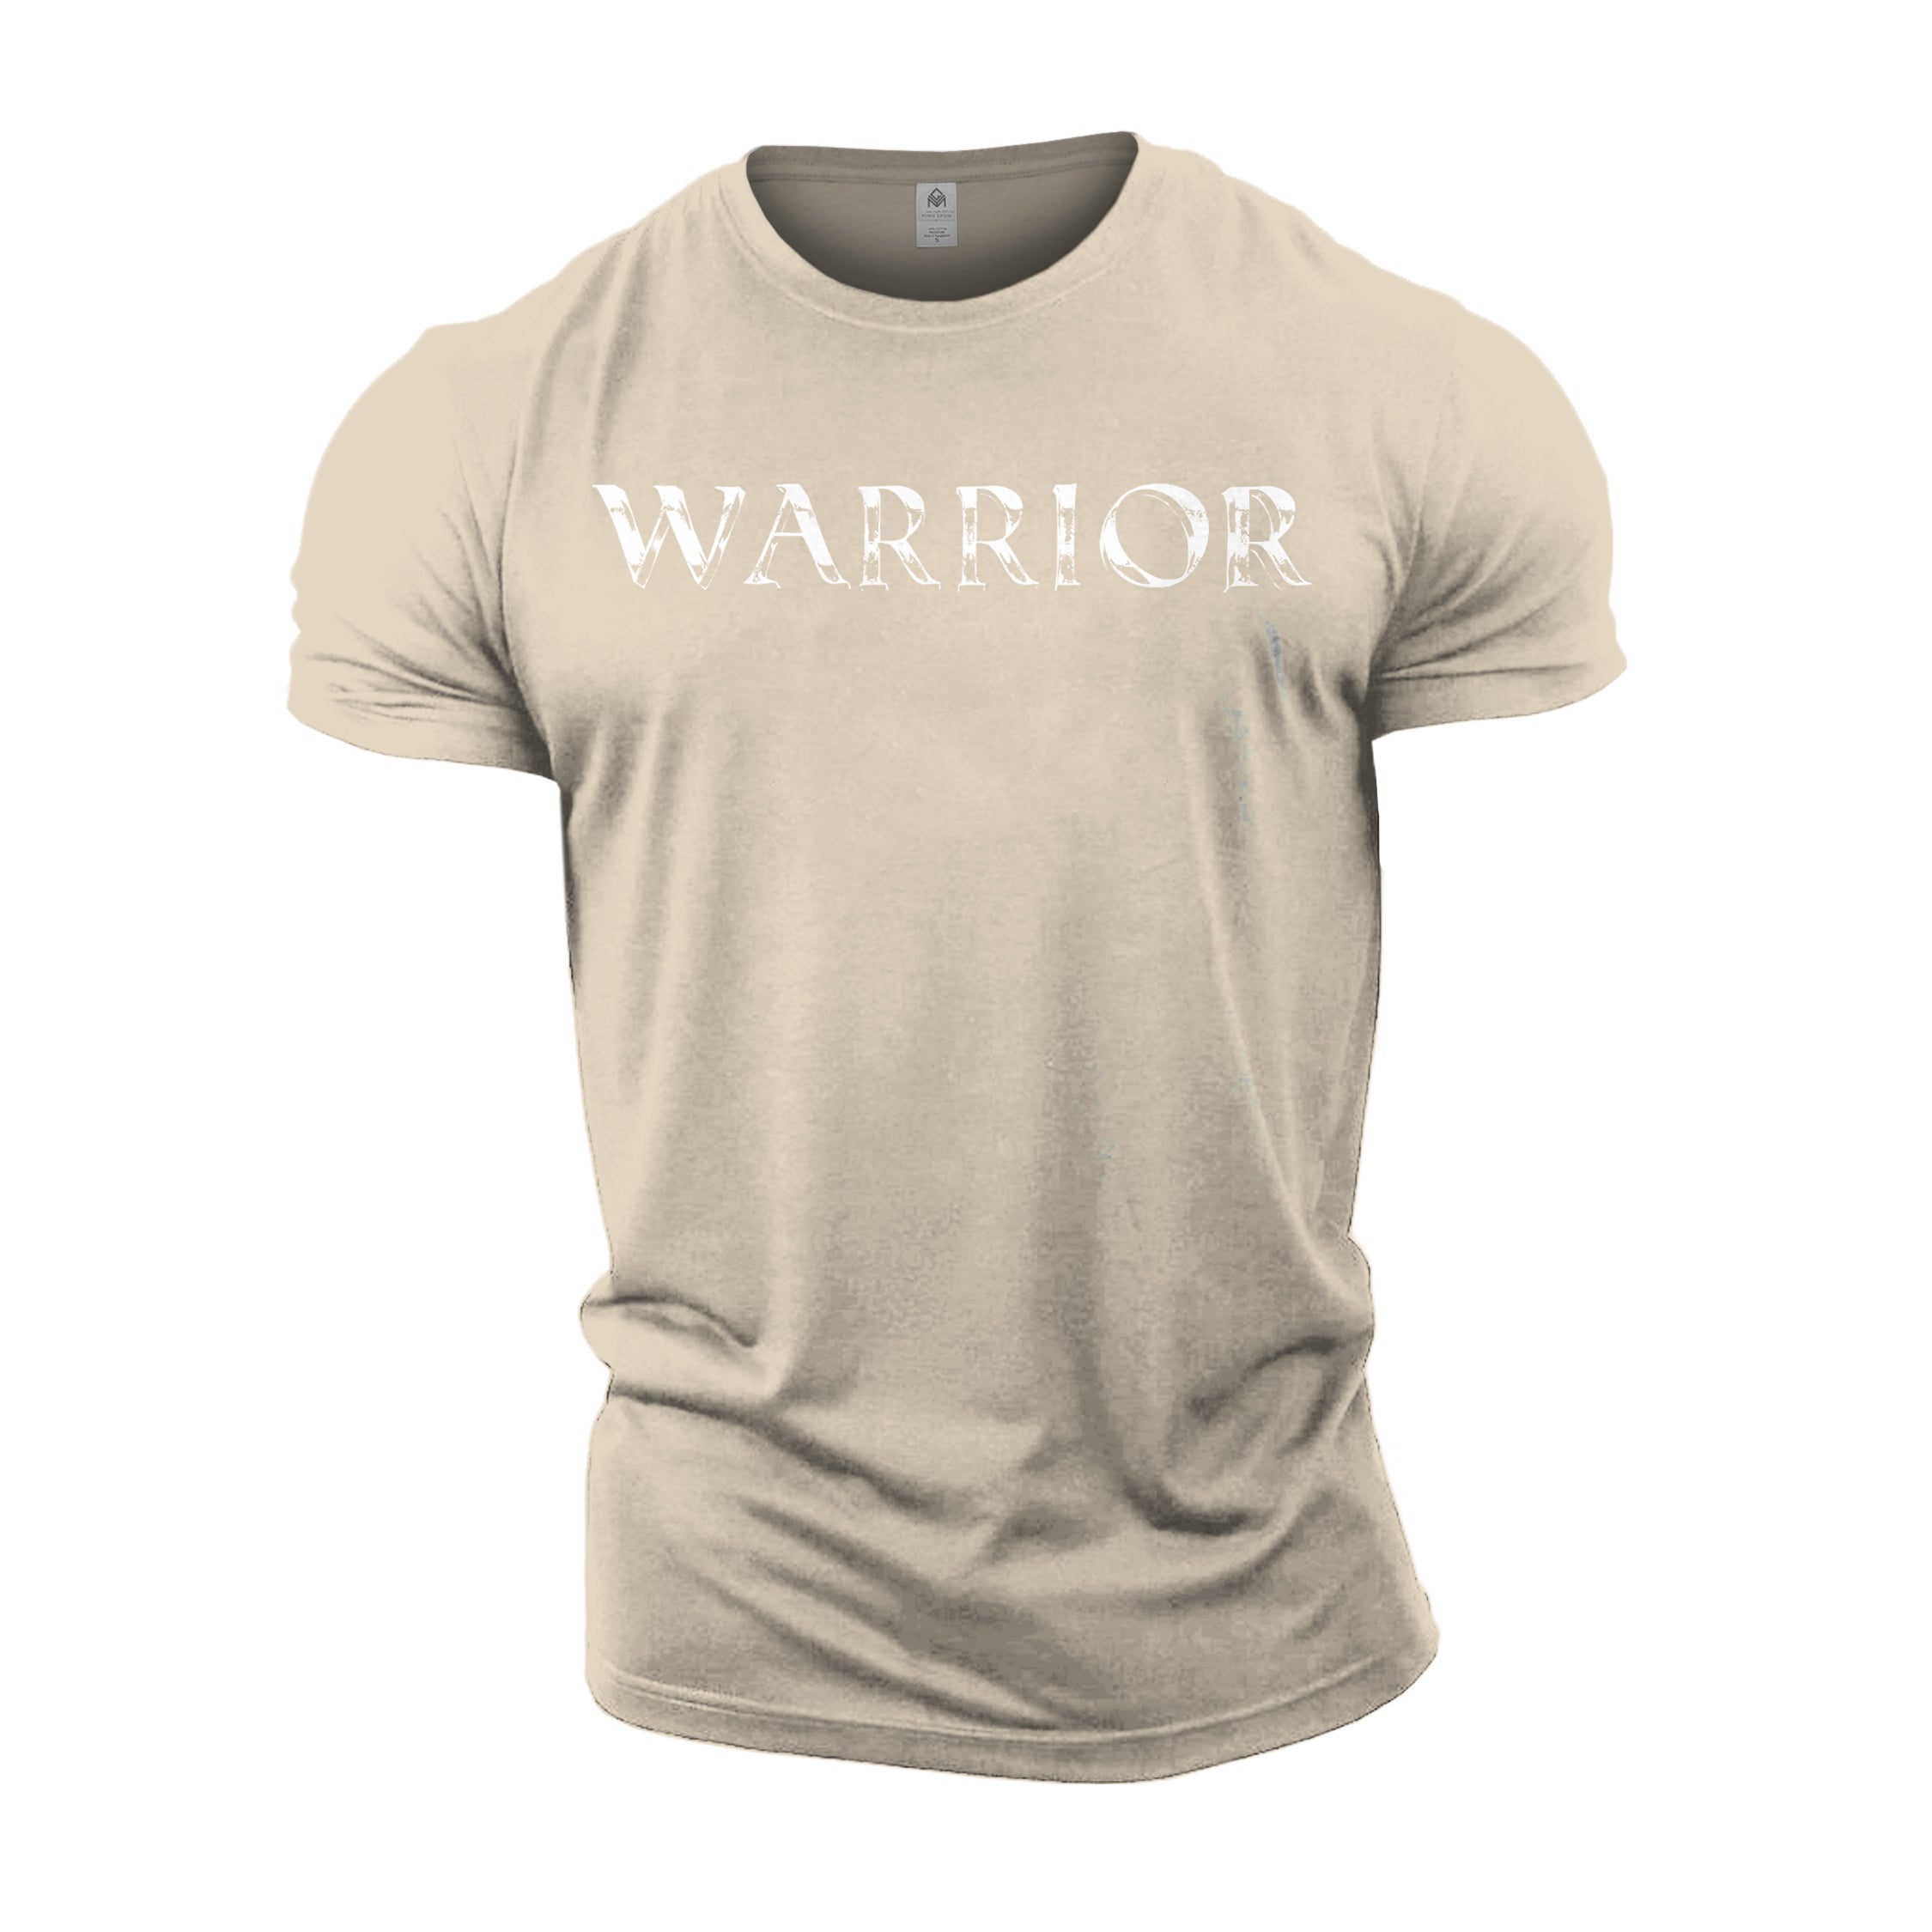 Warrior - Gym T-Shirt